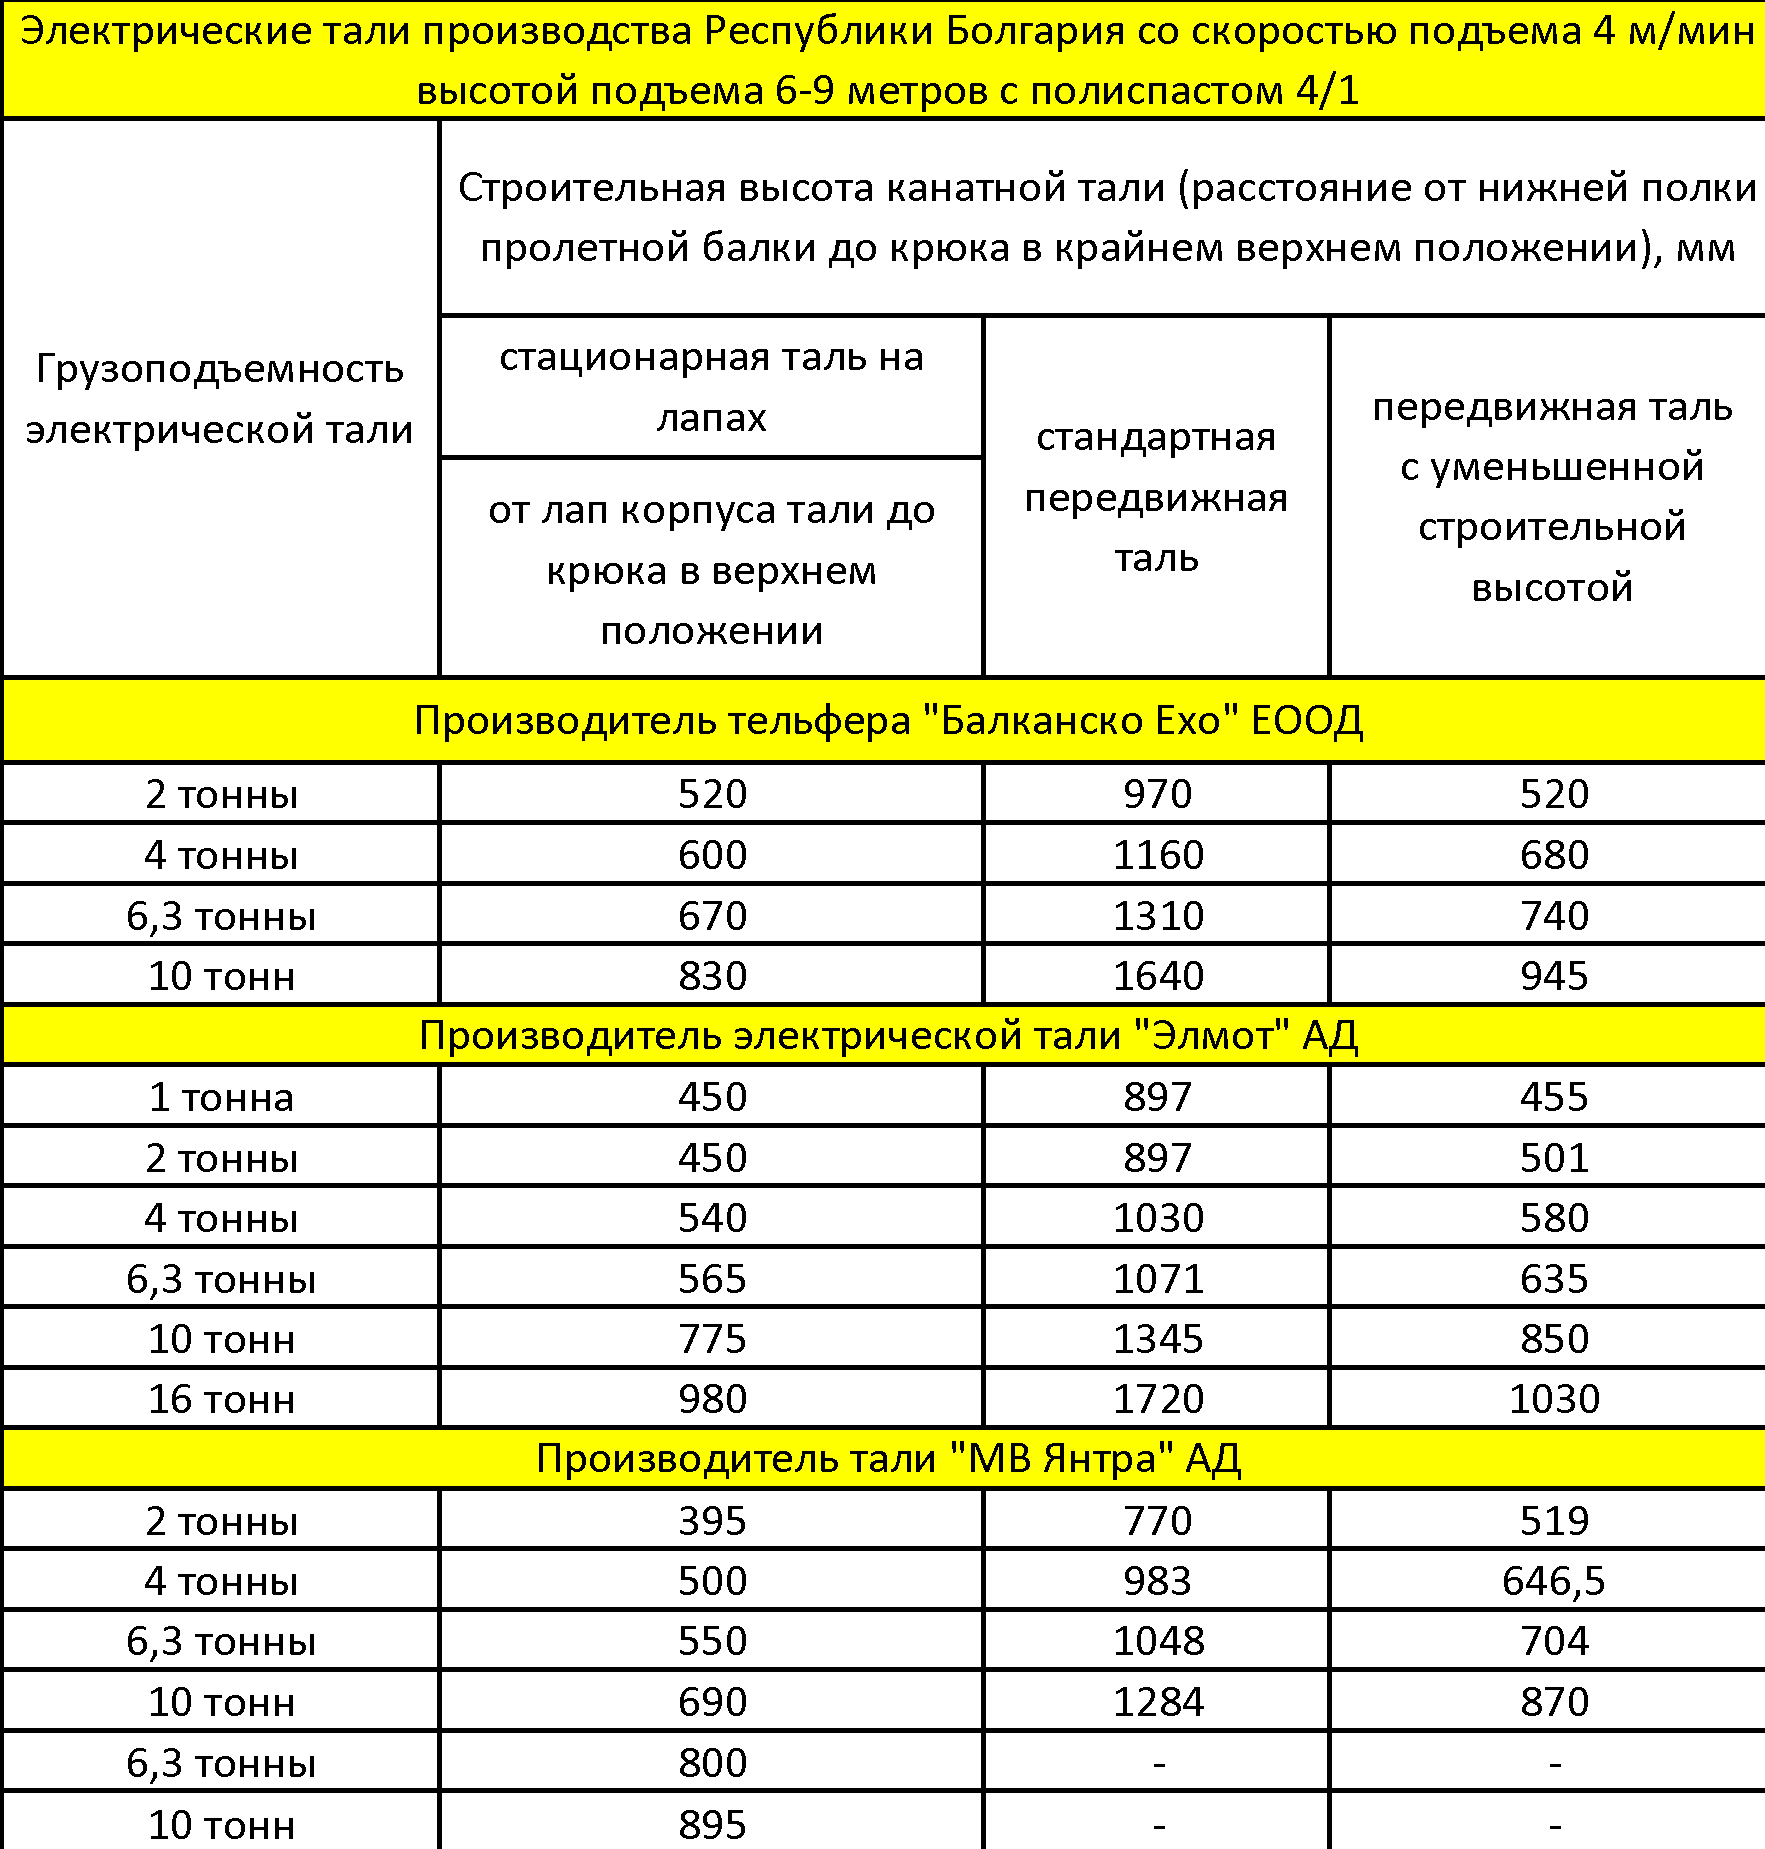 сравнение габаритов болгарских талей 4 м/мин